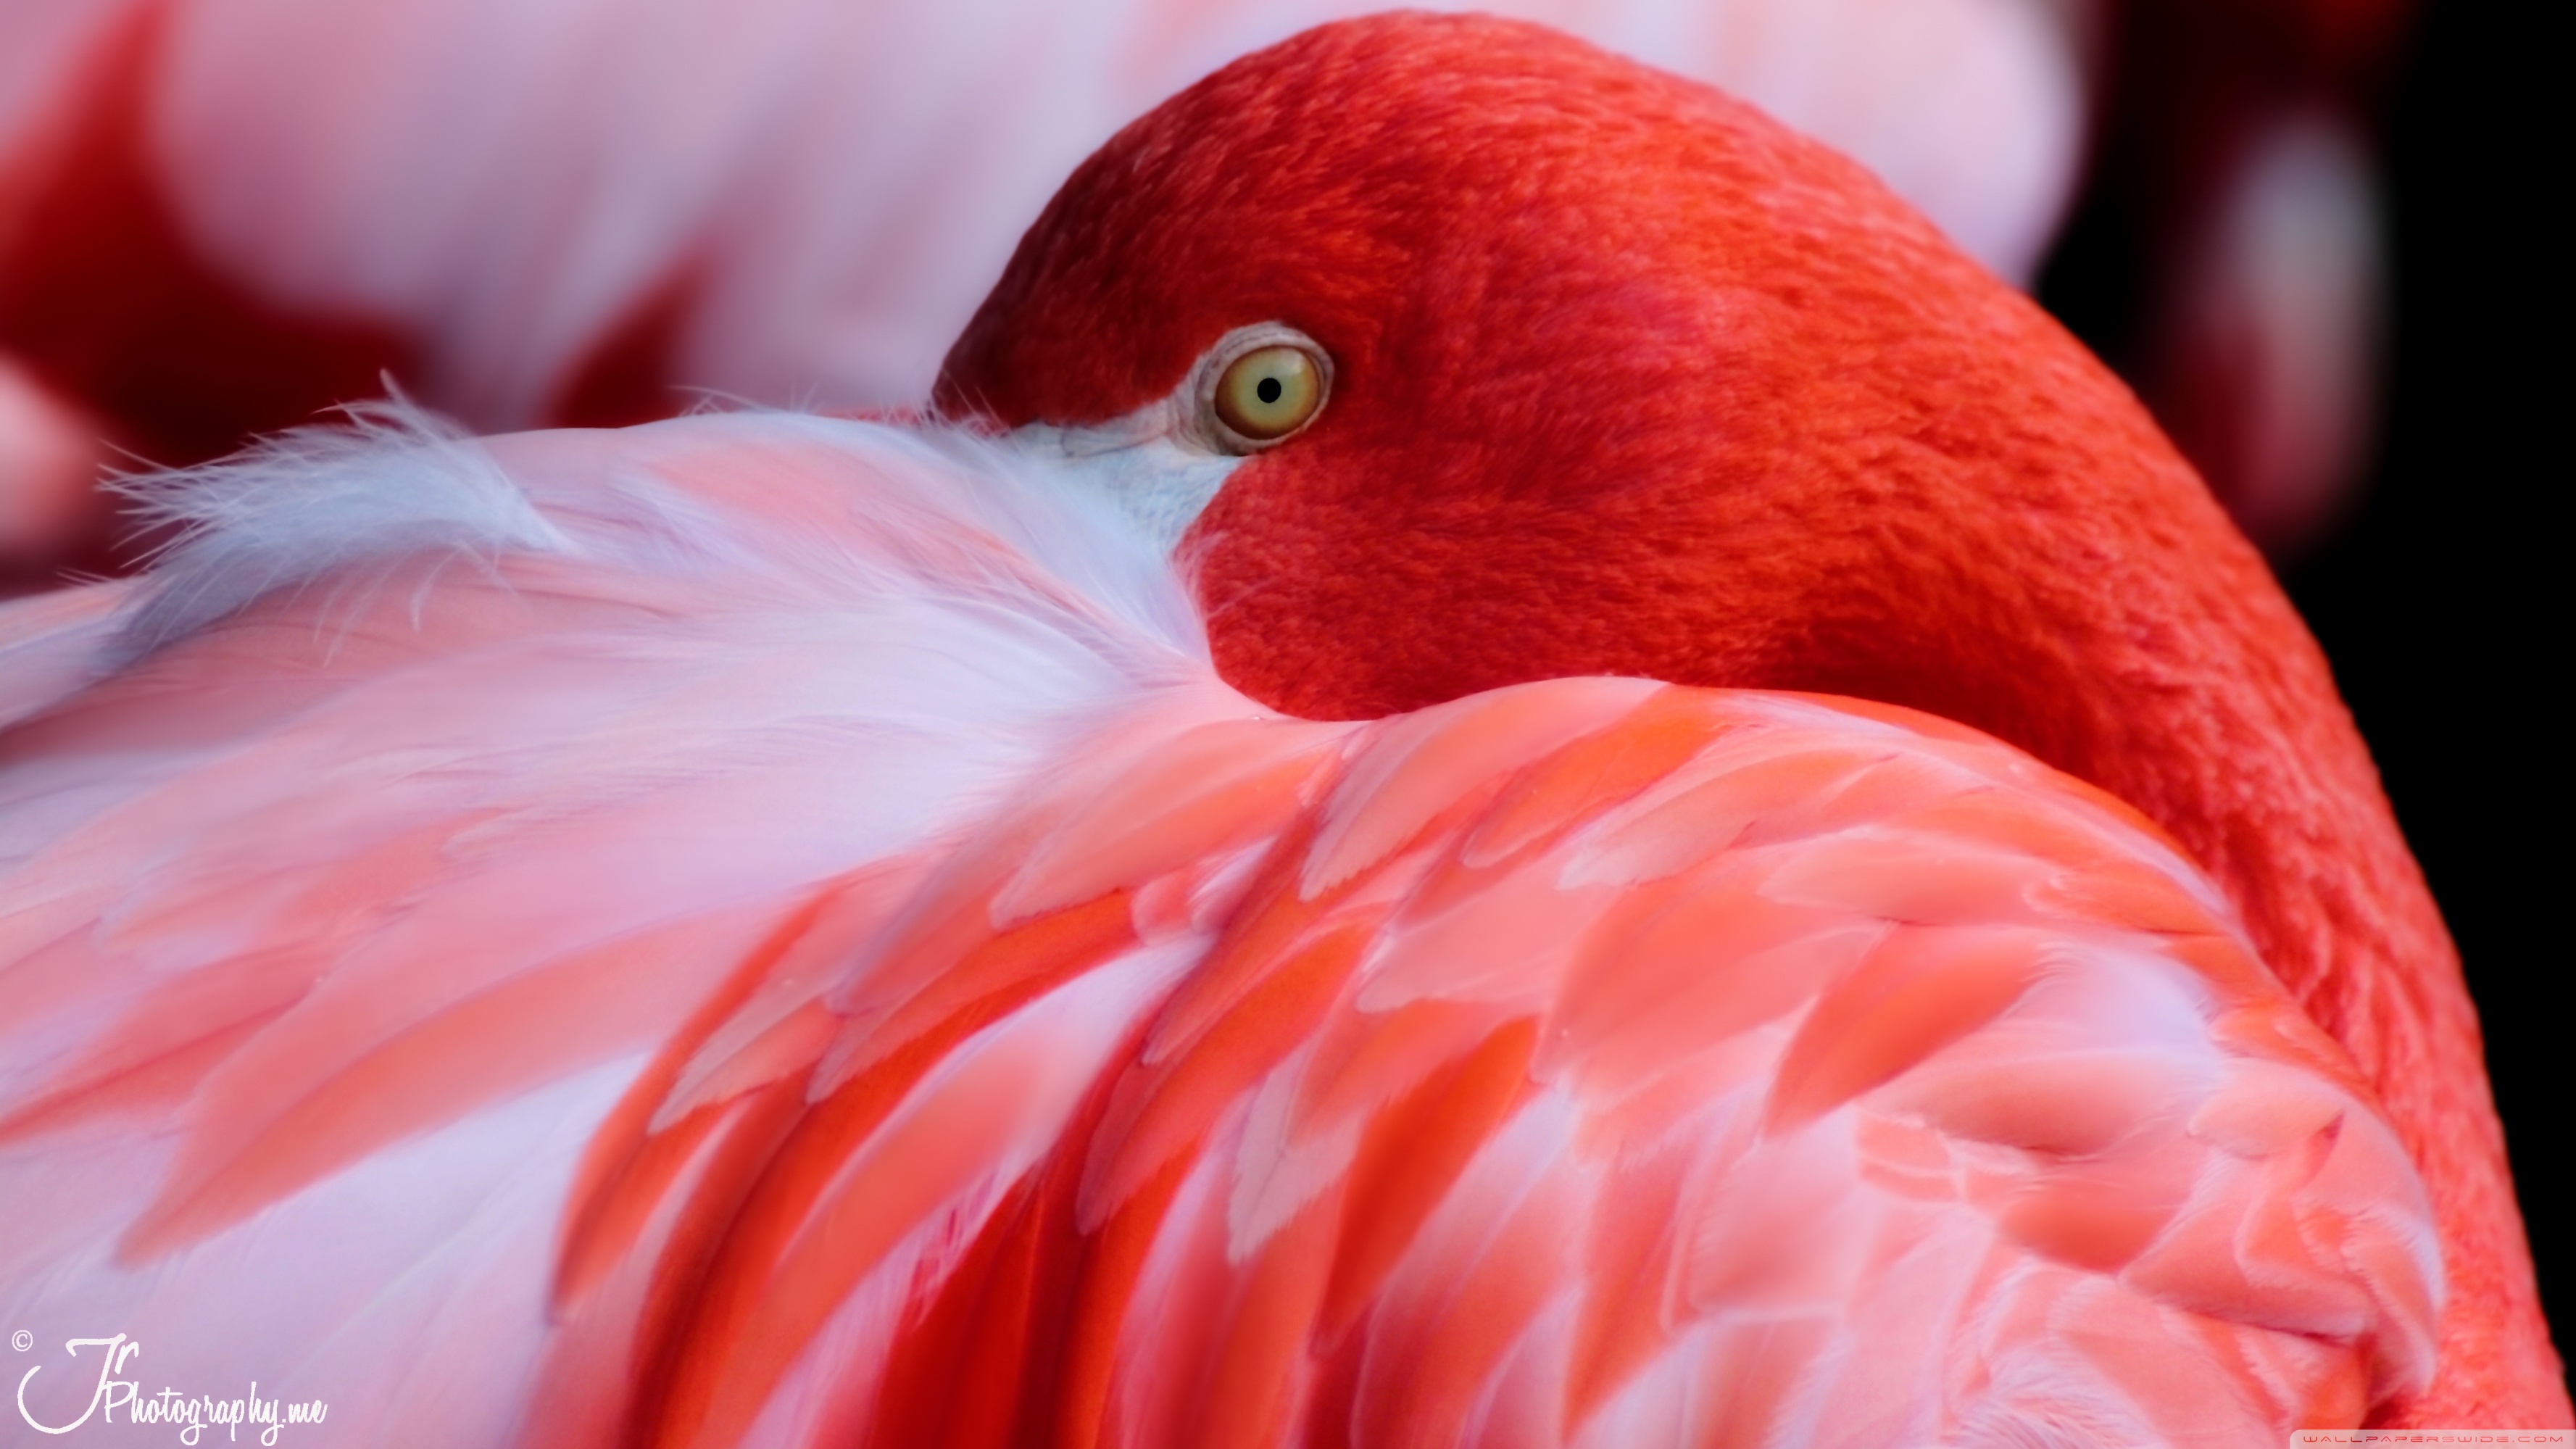 Red flamingo photo